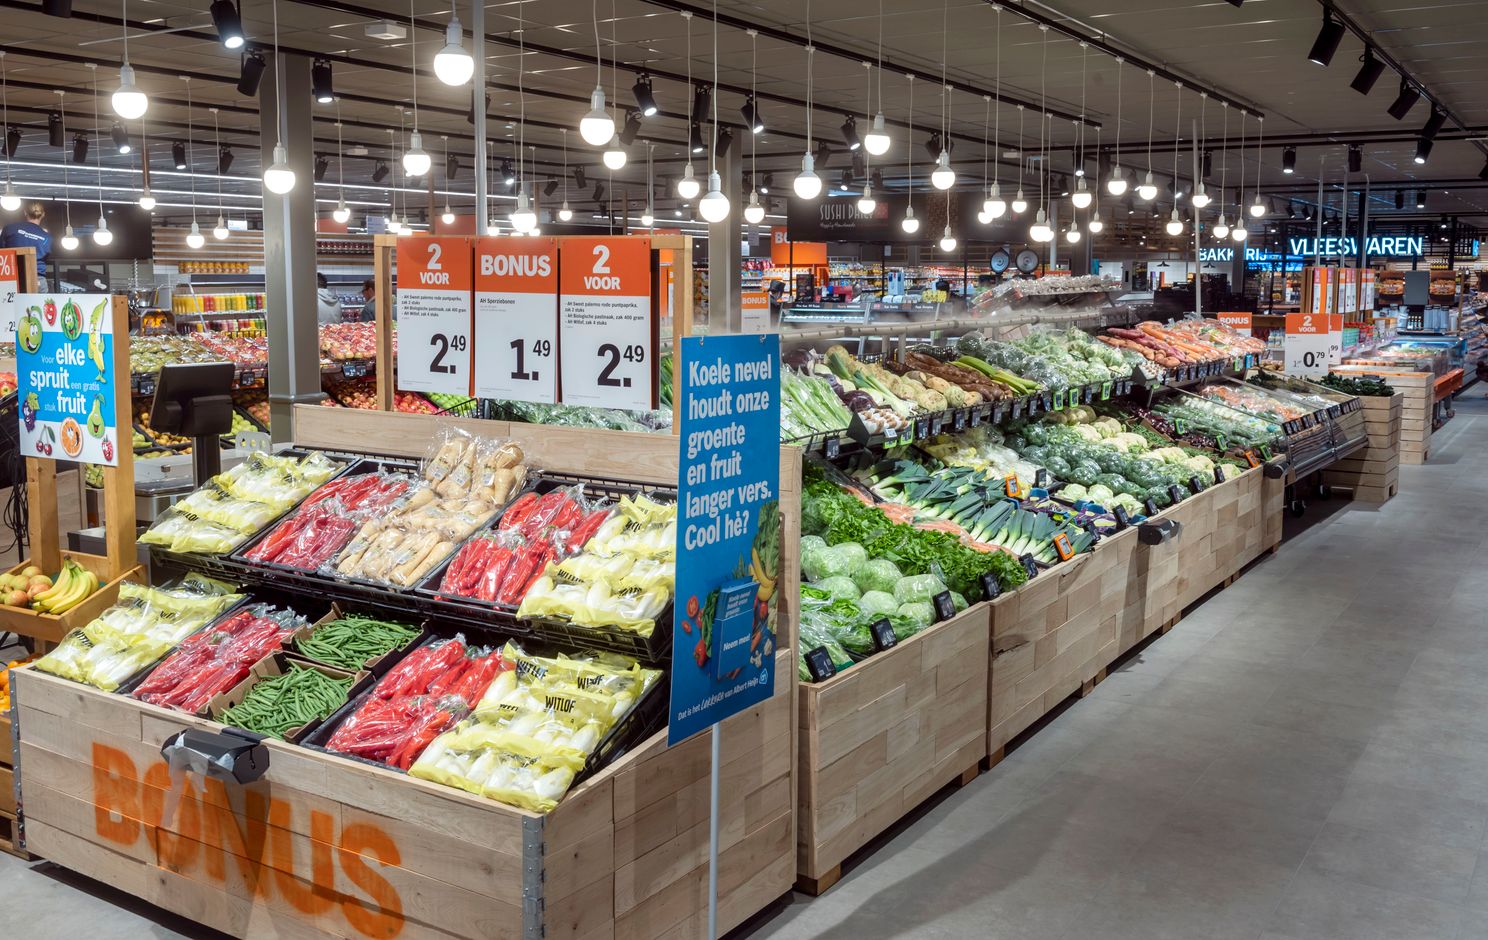 Albert Heijn supermarket app gets a sustainable new function